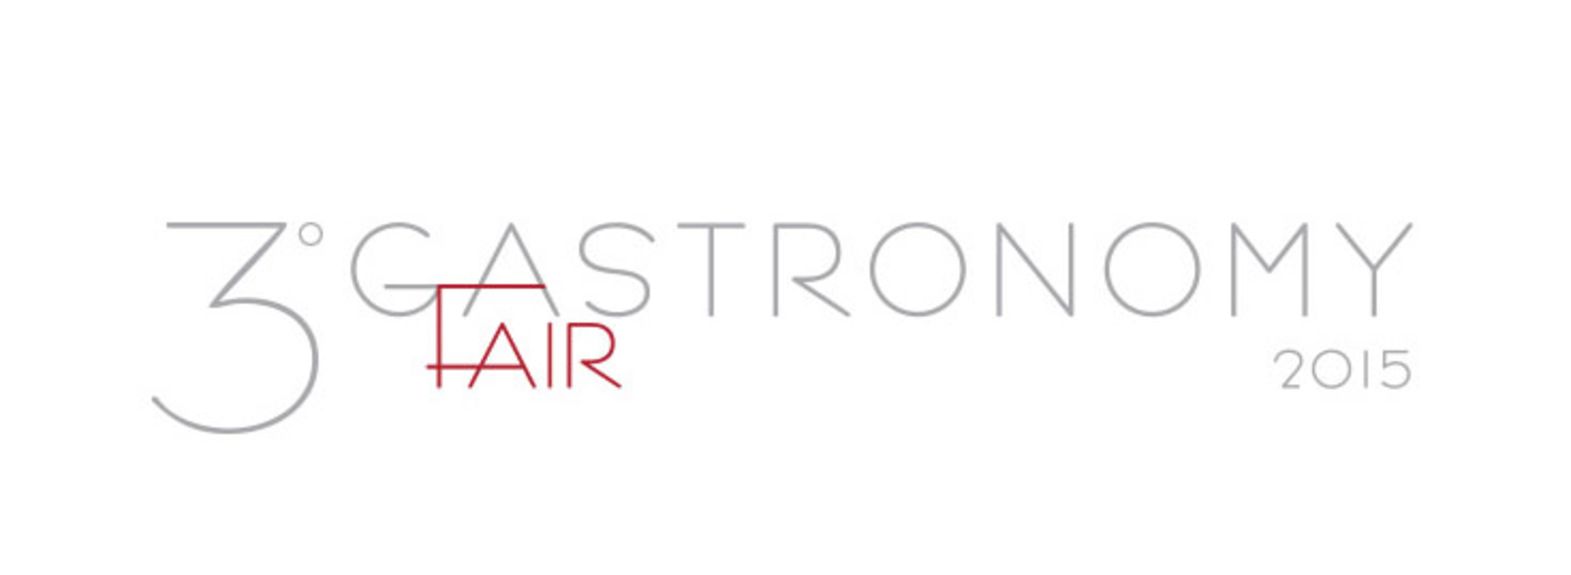 Gastronomy fair logo1